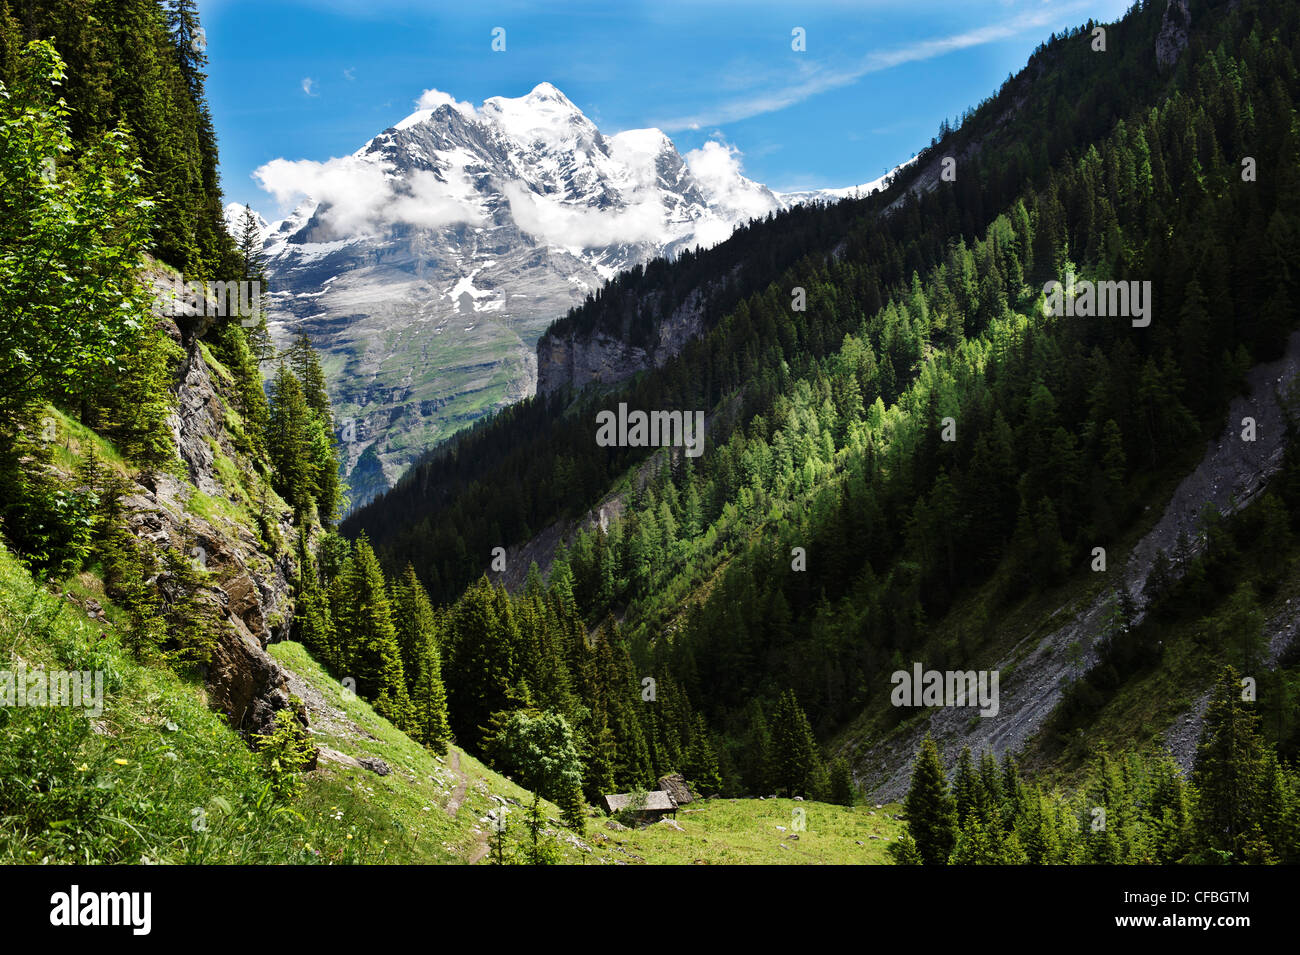 La Suisse, dans le canton de Berne, les Alpes, les Alpes Bernoises, l'Oberland bernois, vallée, bois, forêt, montagne, forêts de montagne, l'épinette de Norvège Banque D'Images